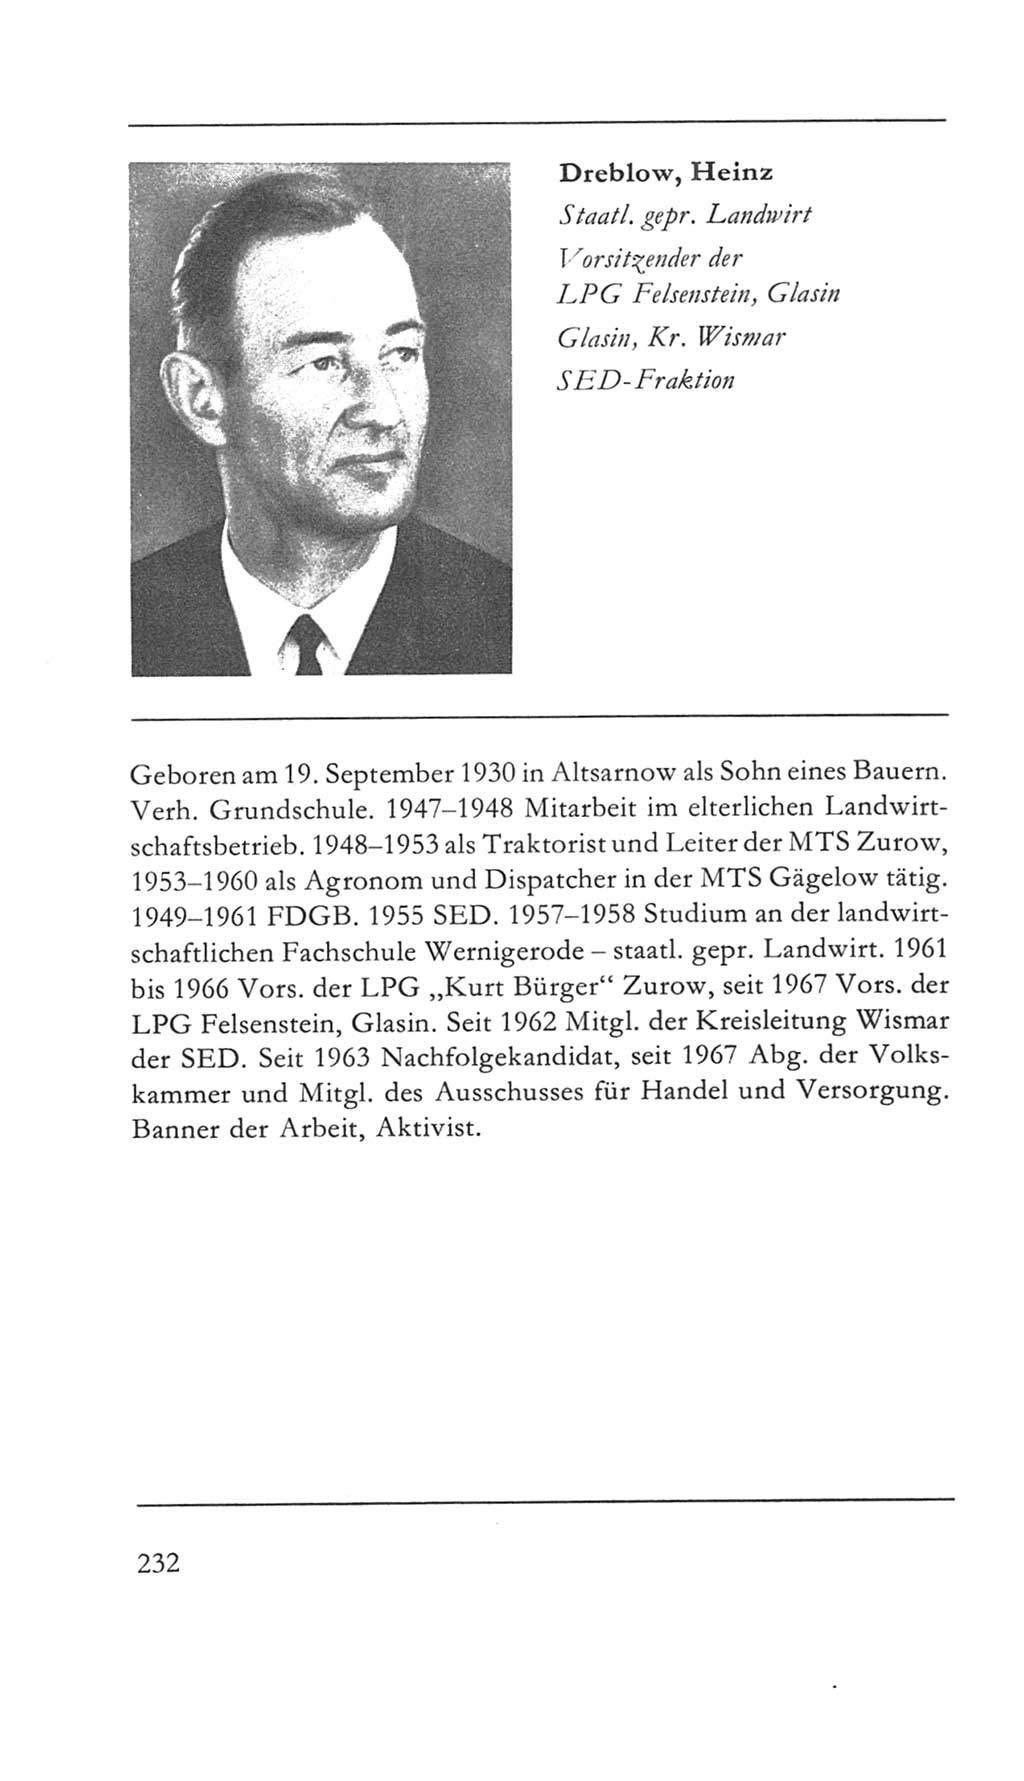 Volkskammer (VK) der Deutschen Demokratischen Republik (DDR) 5. Wahlperiode 1967-1971, Seite 232 (VK. DDR 5. WP. 1967-1971, S. 232)